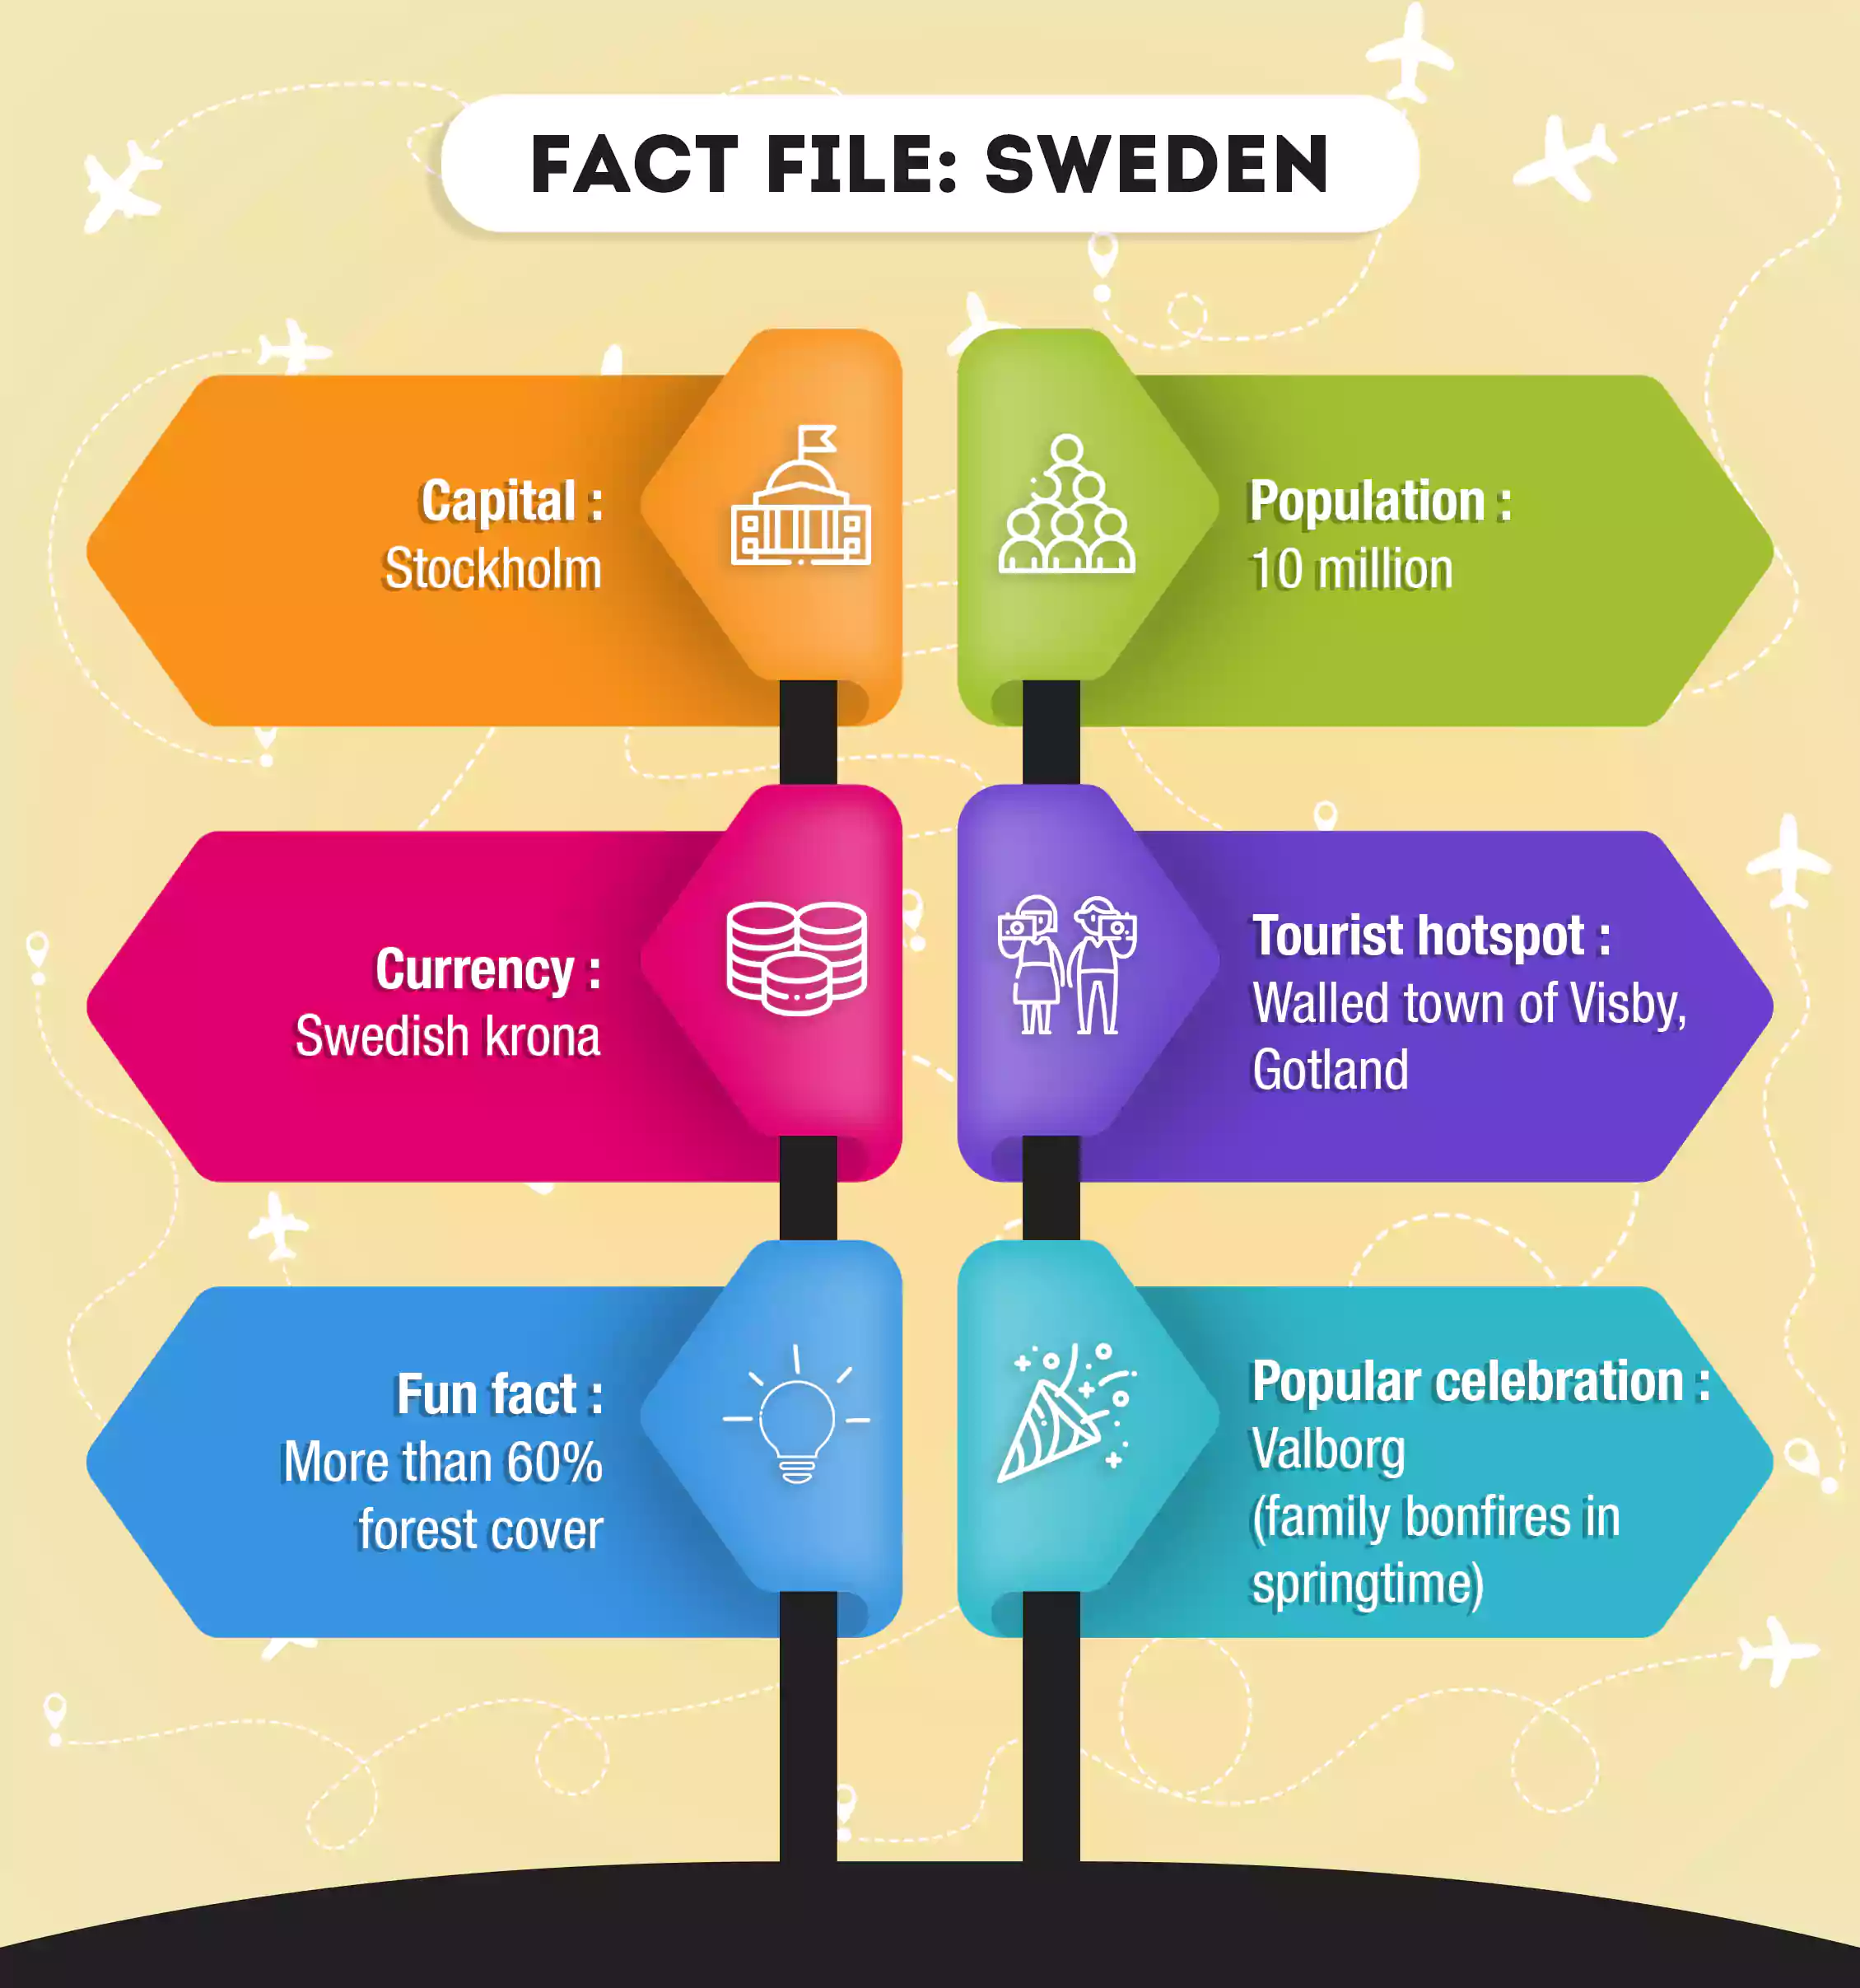 Fact file: Sweden